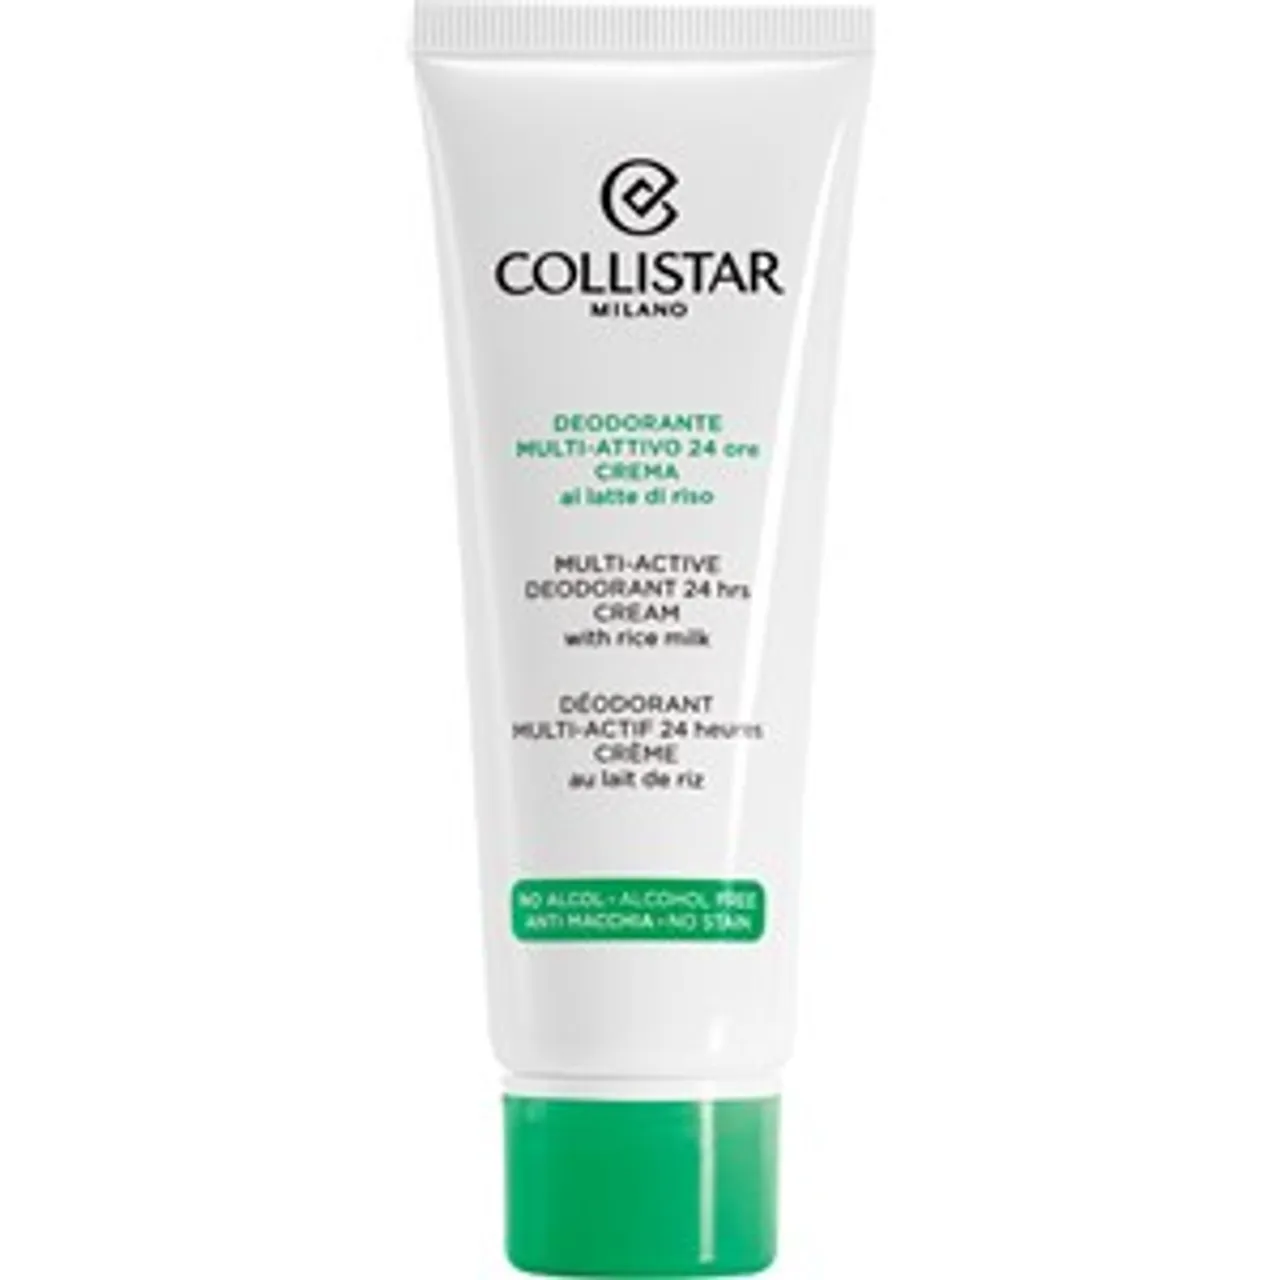 Collistar Multi-Active Deodorant 24h Cream Female 75 ml